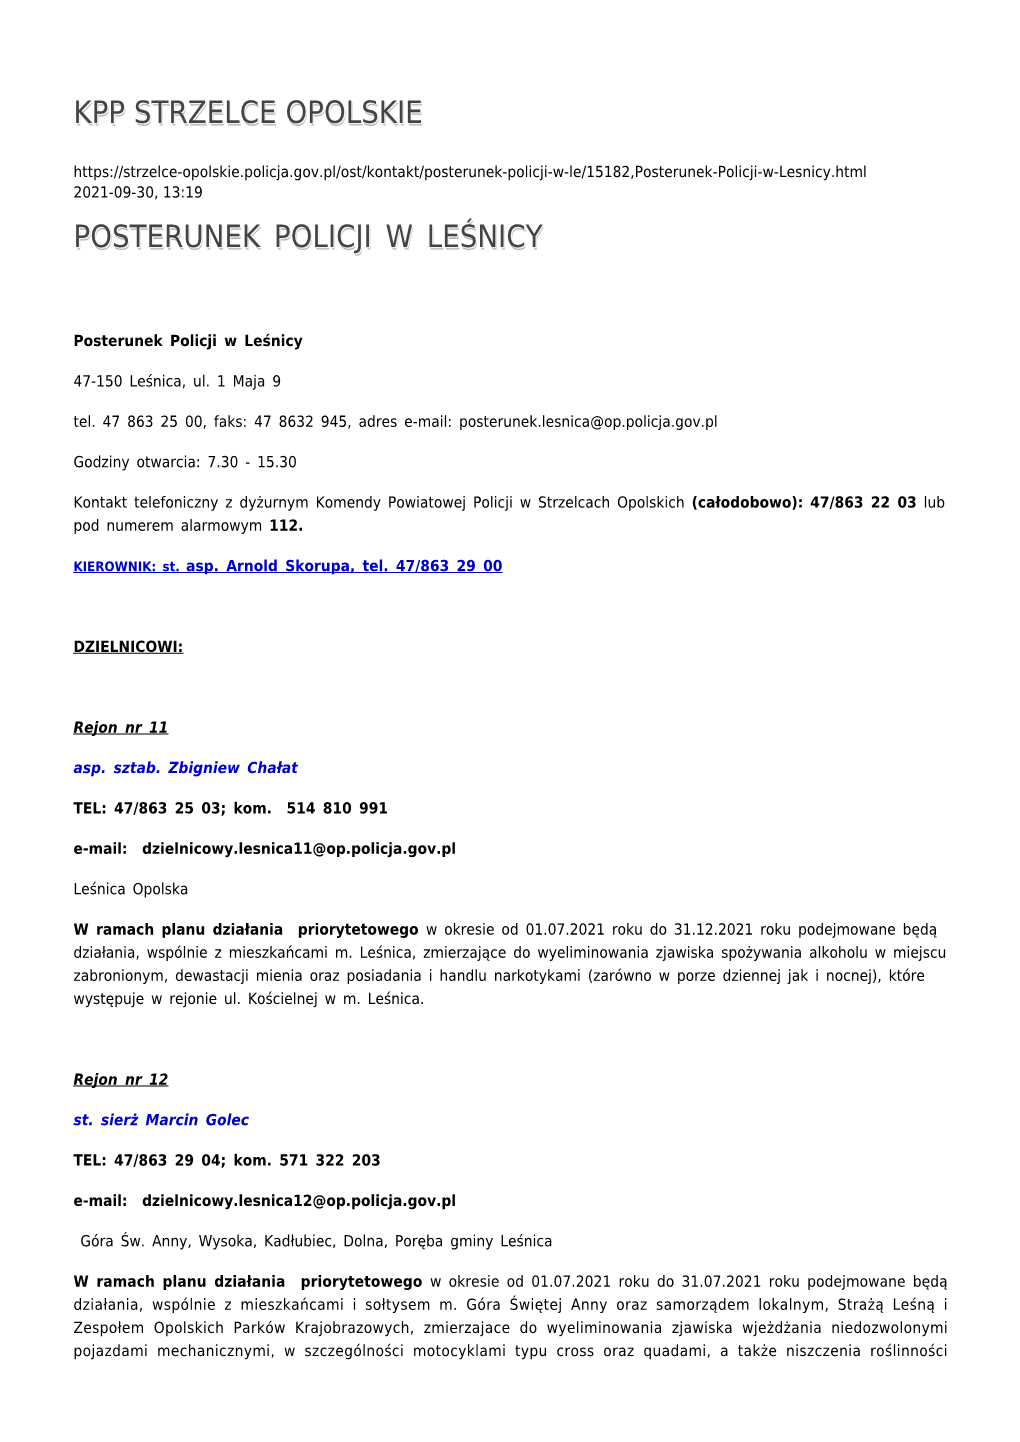 Posterunek Policji W Leśnicy